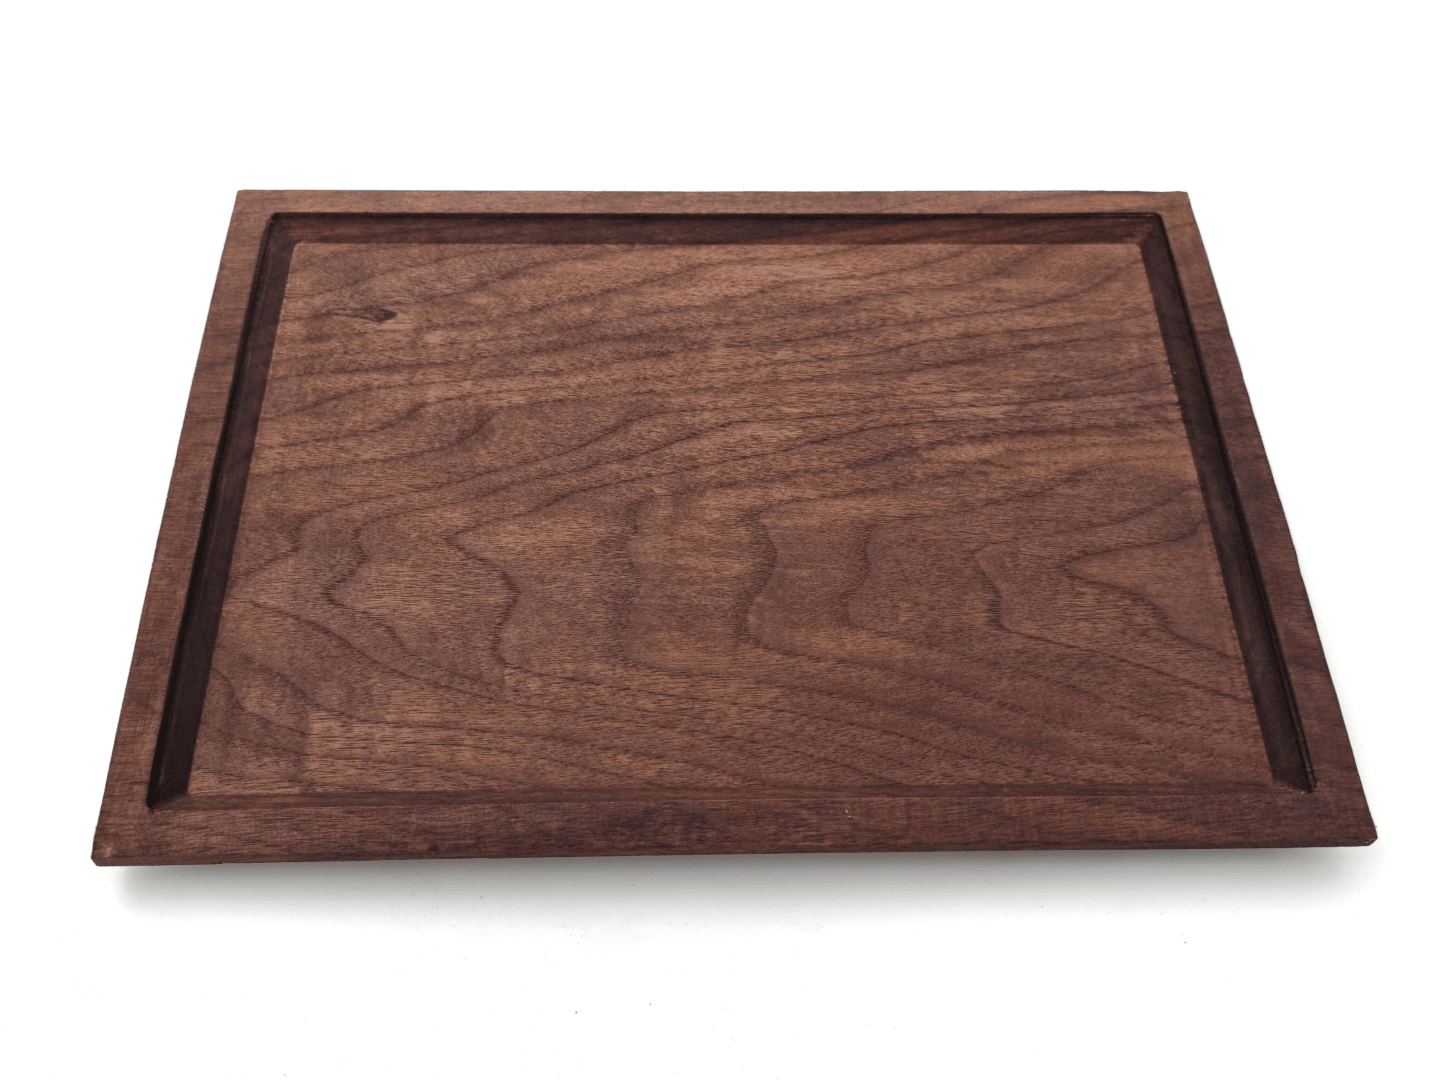 Walnut Serving Tray - Plate | Minimalist Design